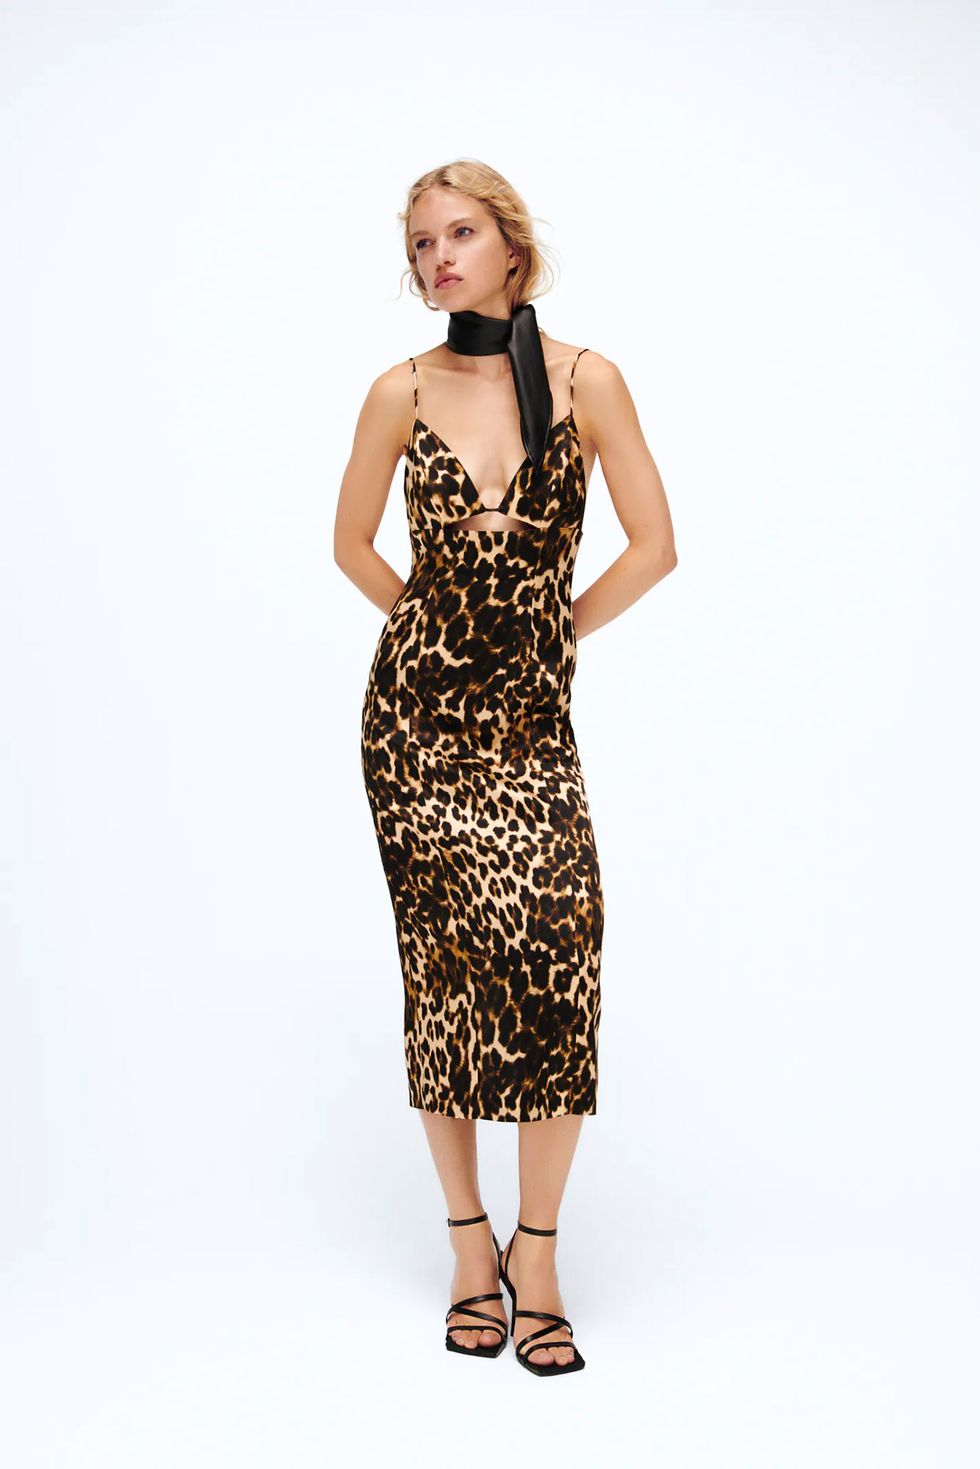 Establecimiento tarde Vislumbrar Todo el 'staff' de Zara ha reservado este vestido de leopardo